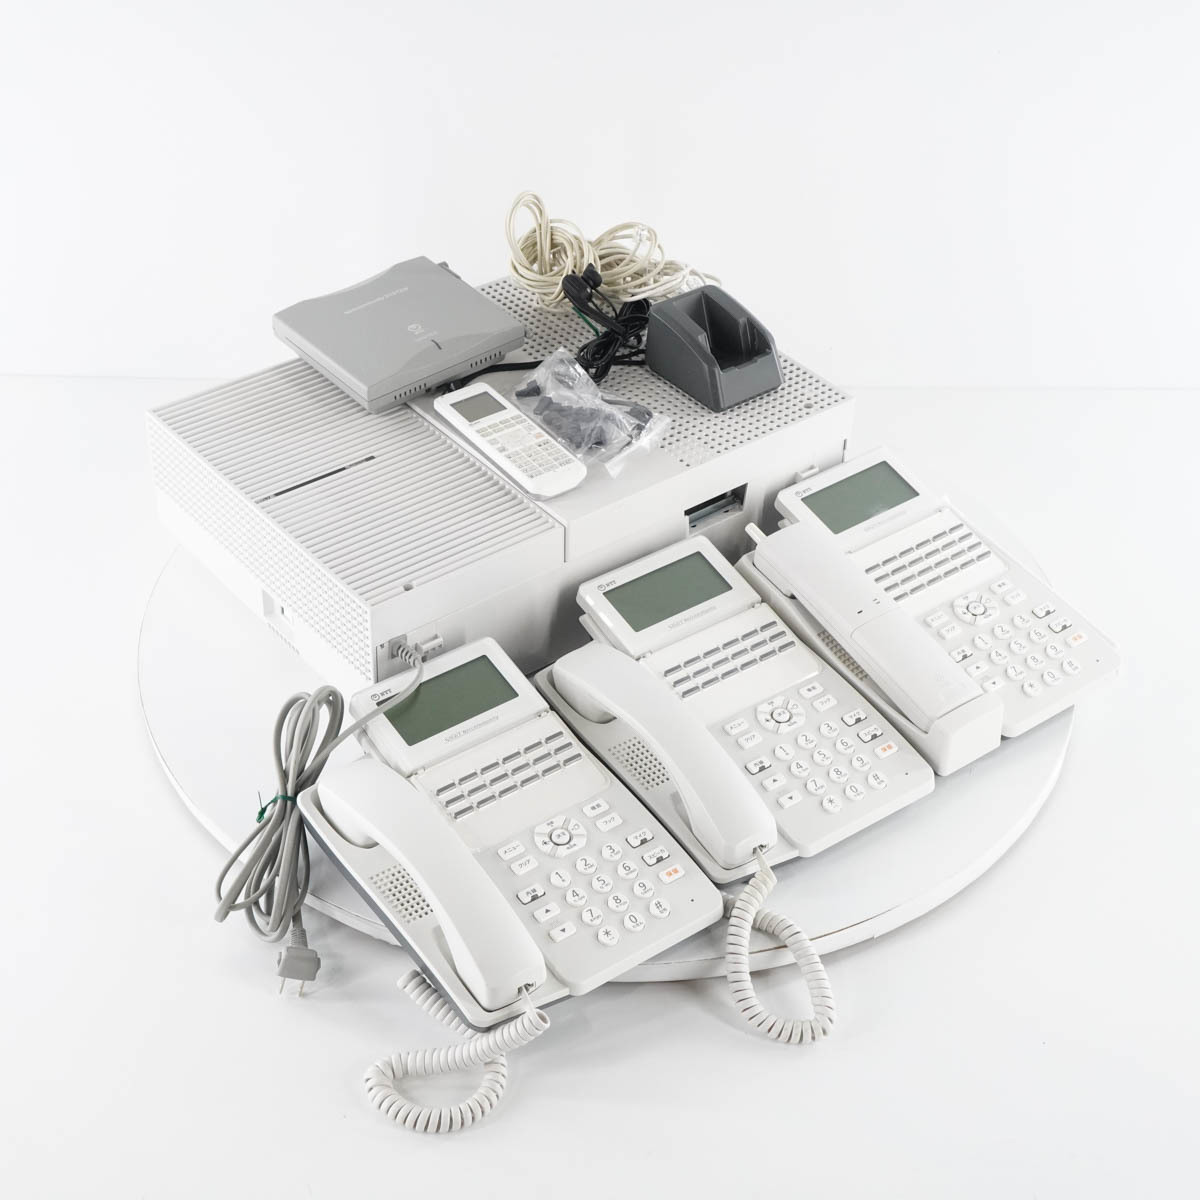 NTT αN1 Mタイプ主装置 スター配線 電話機6台セット | JChere Yahoo